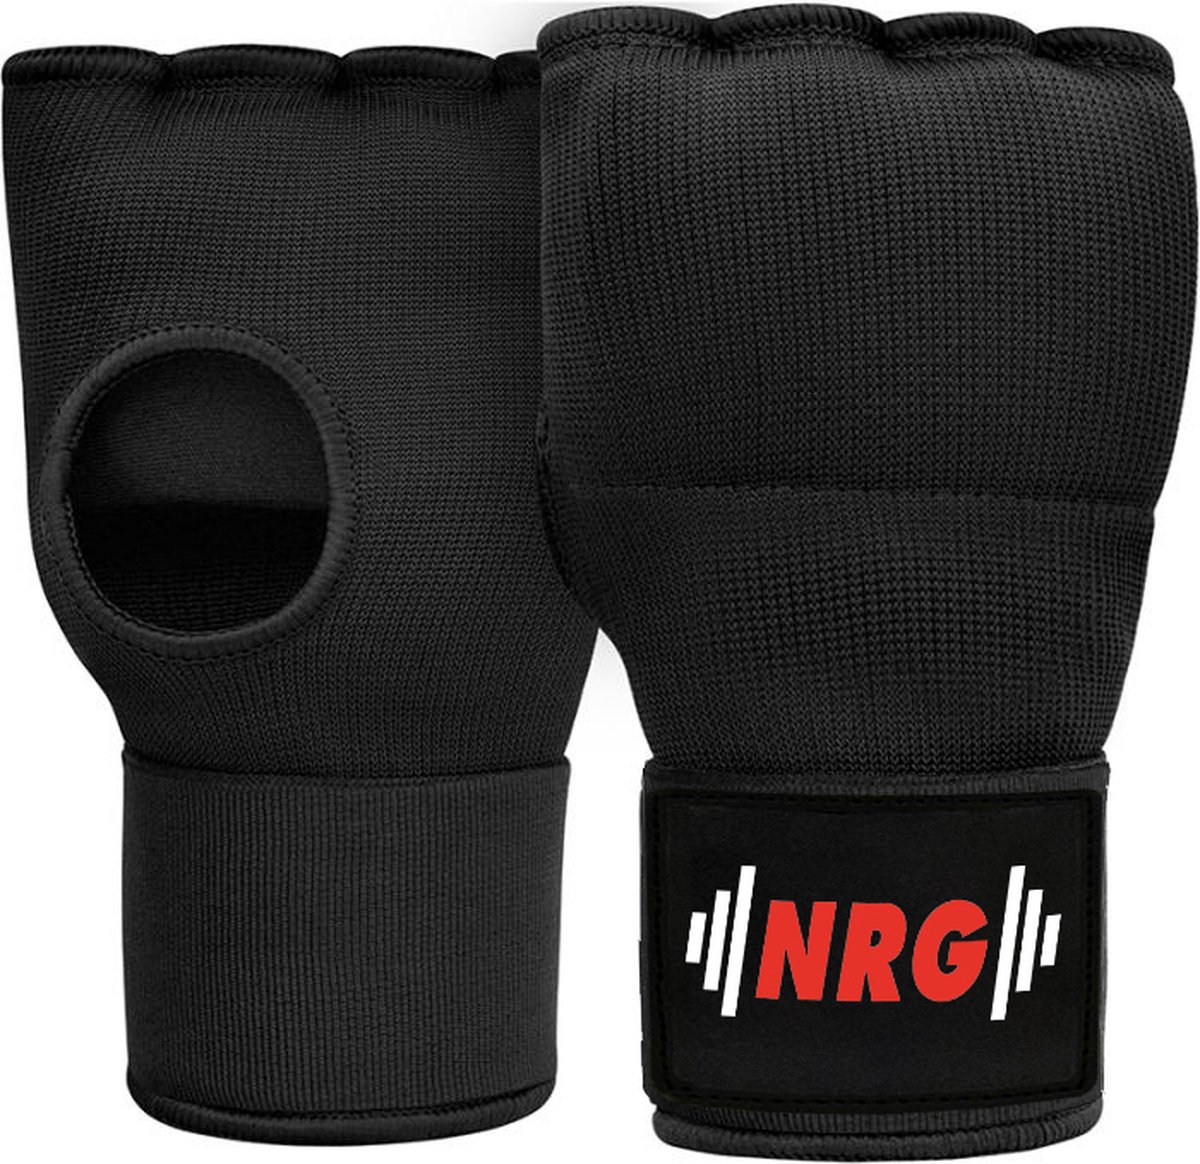 NRG Boxing - Bandage Boksen - Binnenhandschoenen Boksen - Zwart - Katoen - Gel Padding - Met 75 cm lange bandage - Kickboksen -Maat S